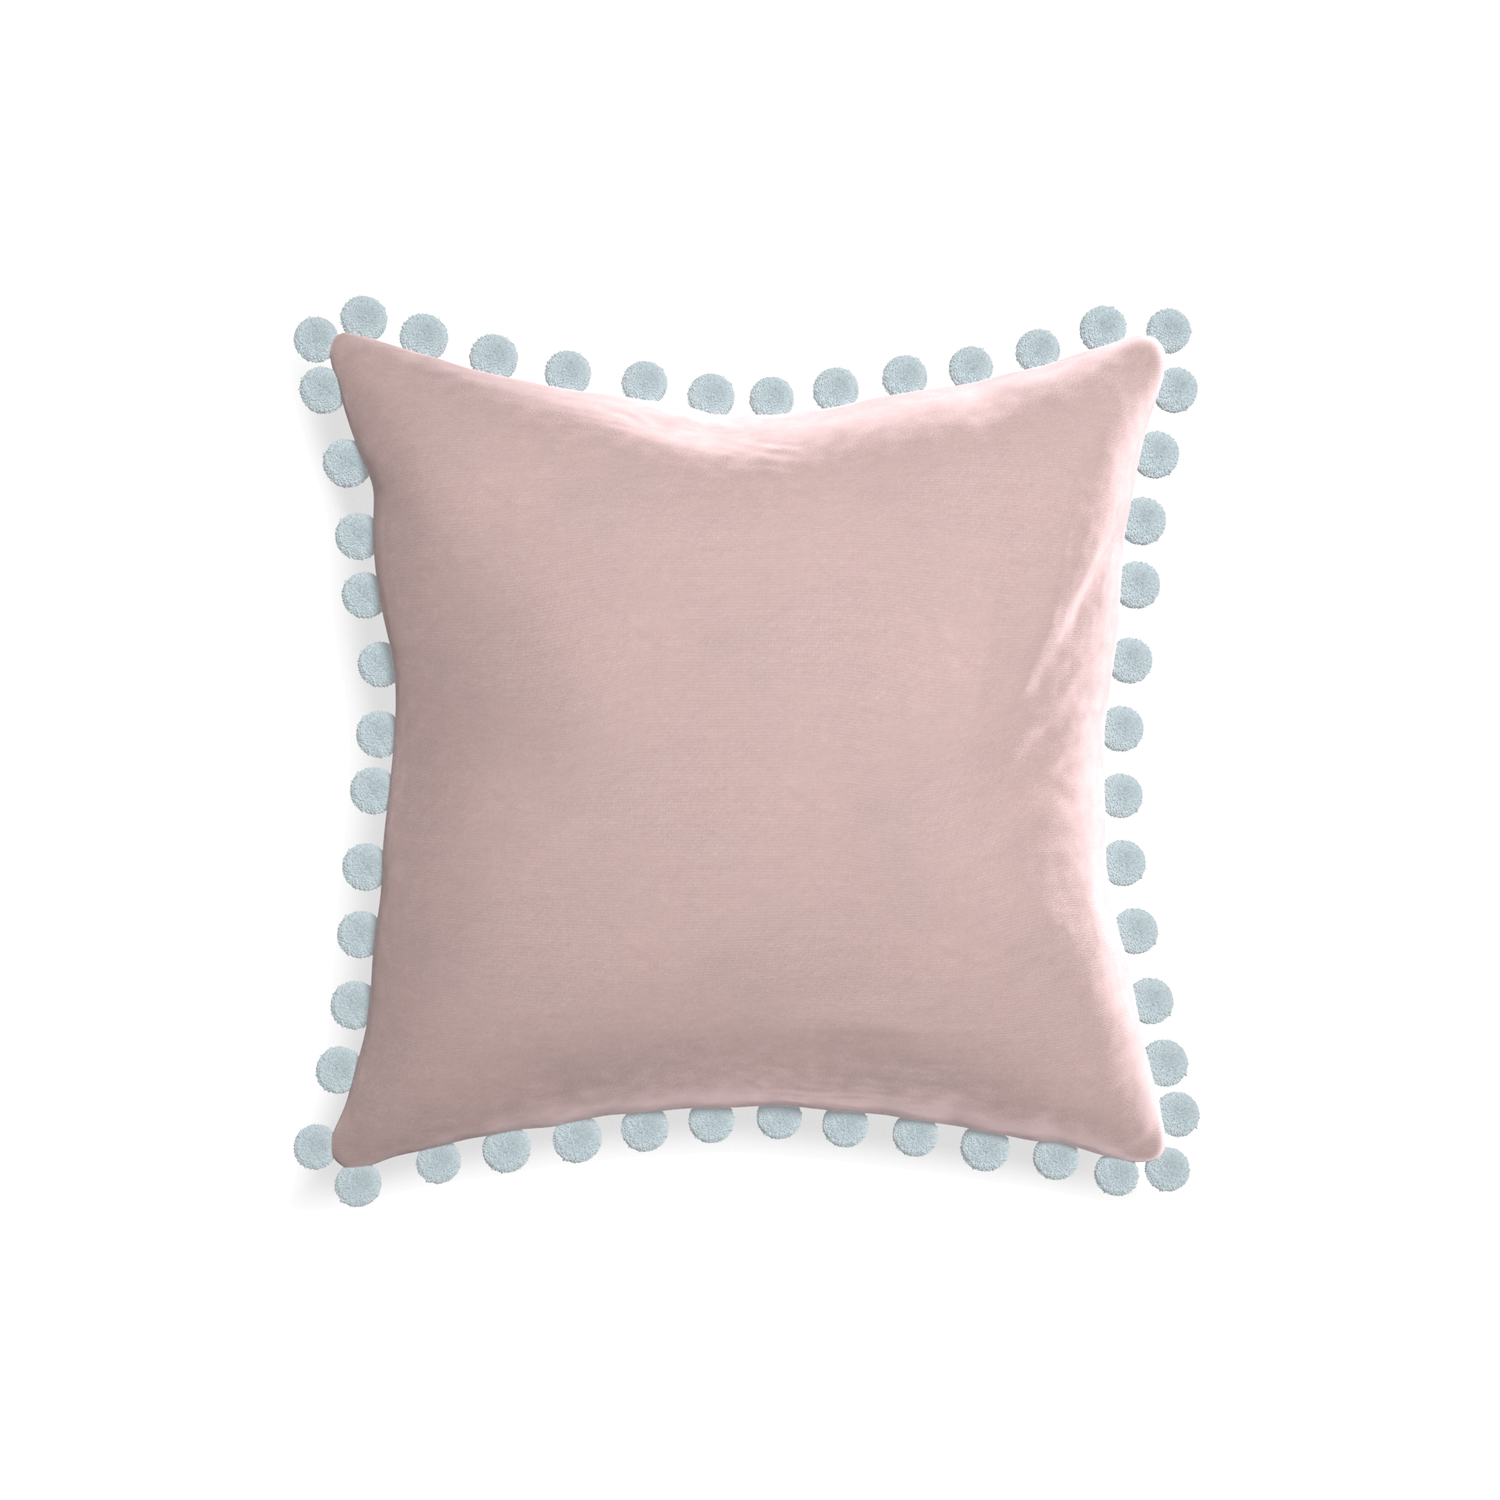 18-square rose velvet custom pillow with powder pom pom on white background